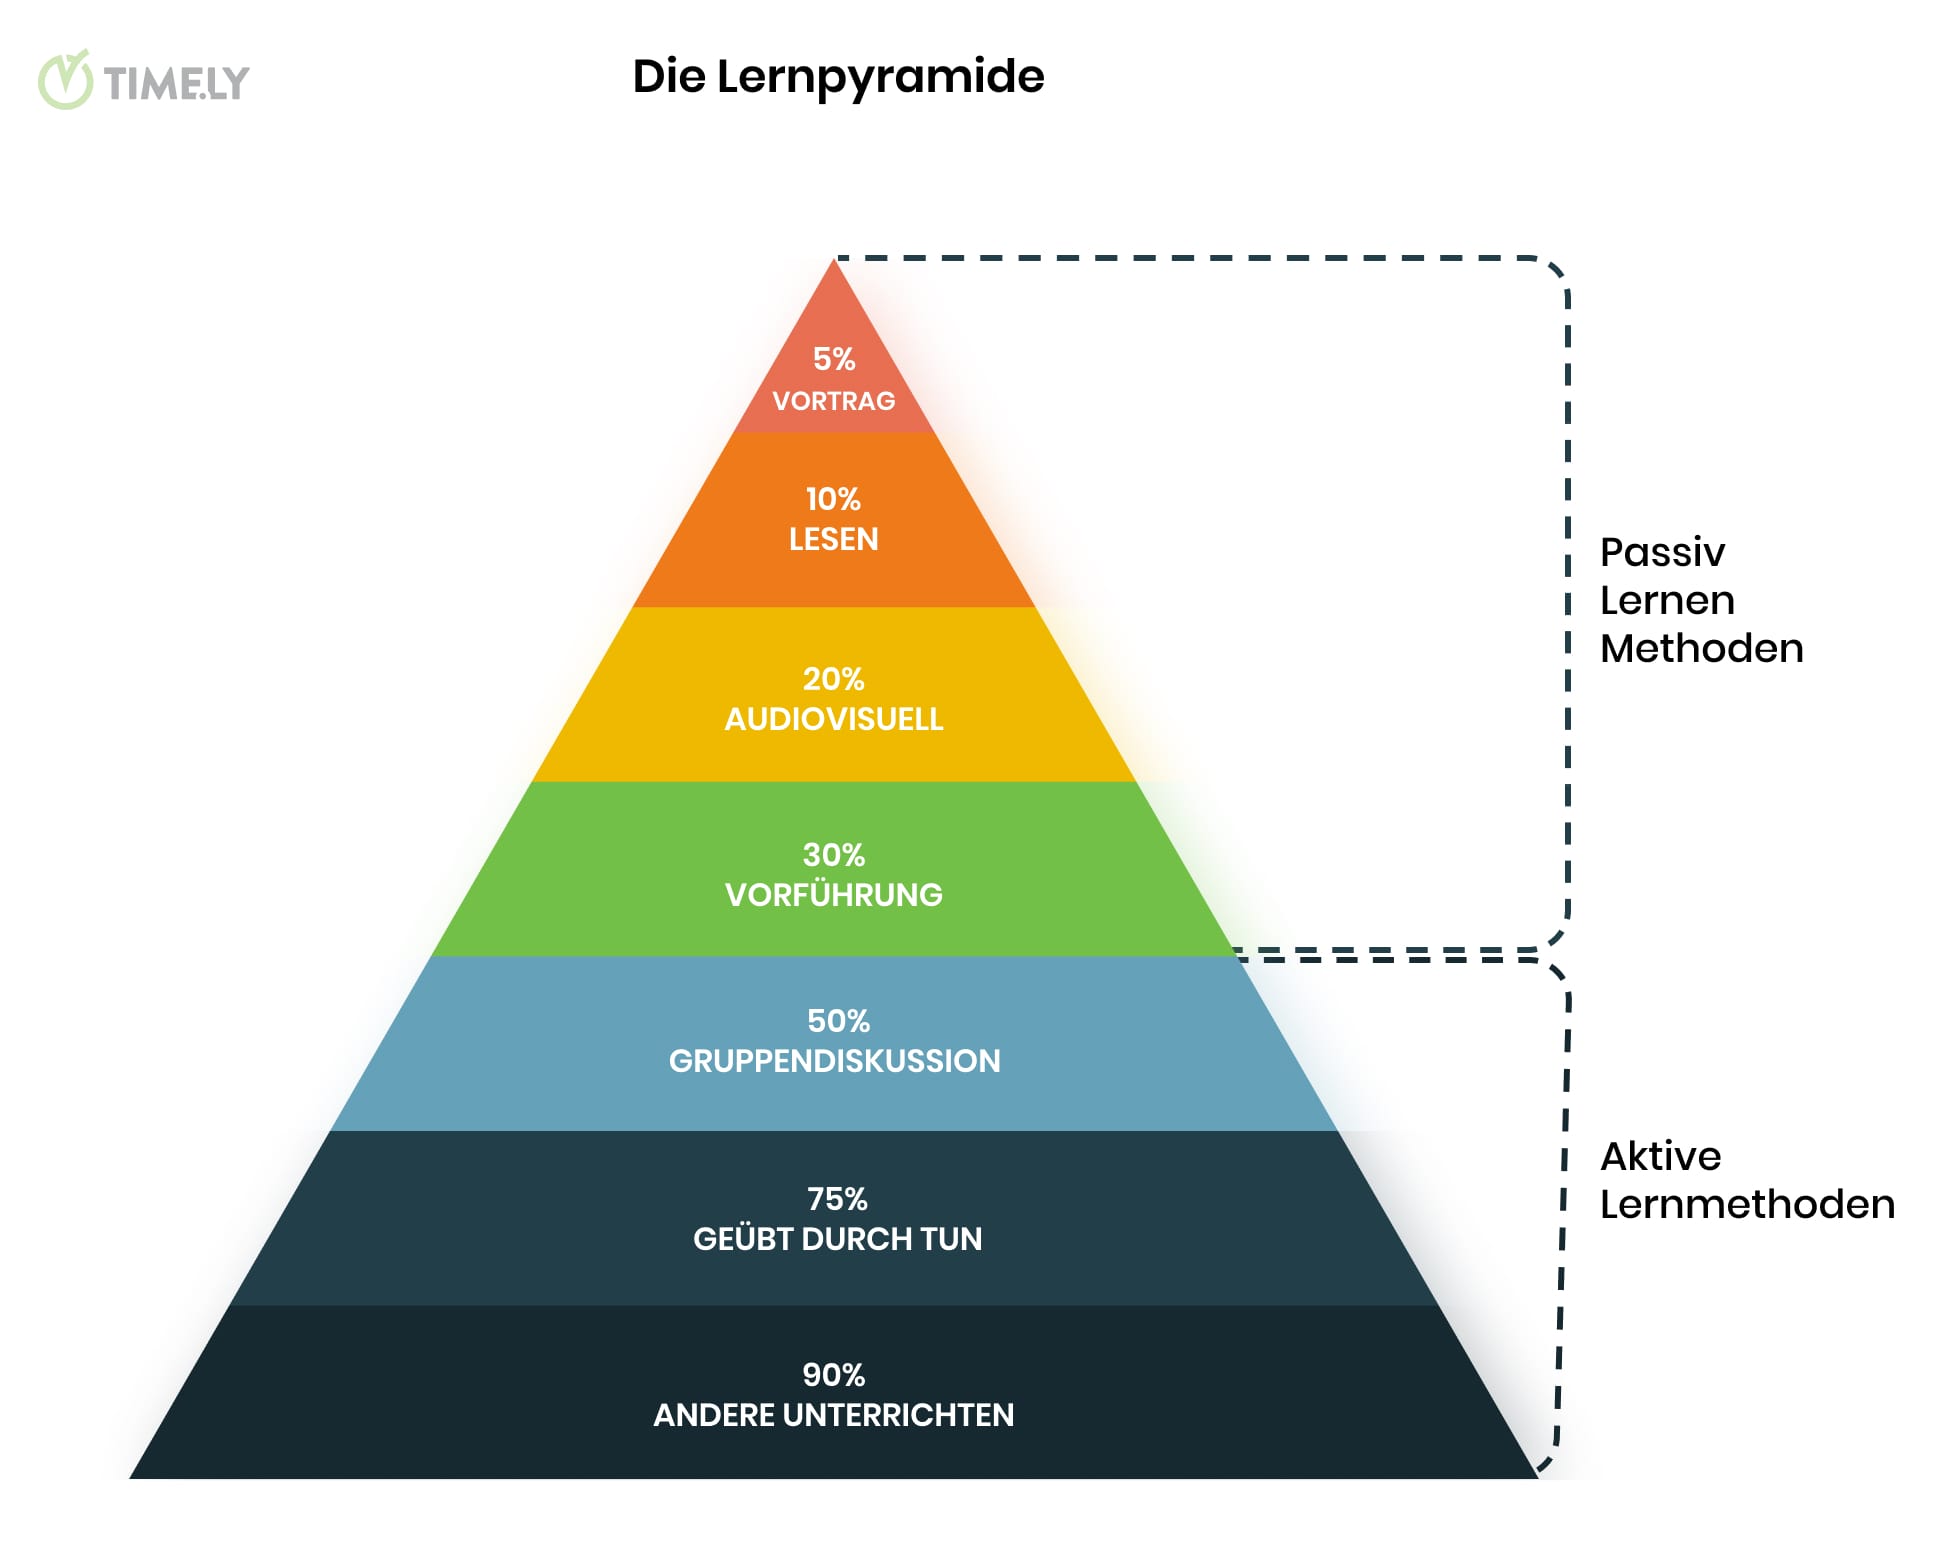 Ein anschauliches Infografik-Bild der Lernpyramide von Edgar Dale mit den dargestellten aktiven und passiven Lernmethoden und den jeweiligen Bindungsraten.